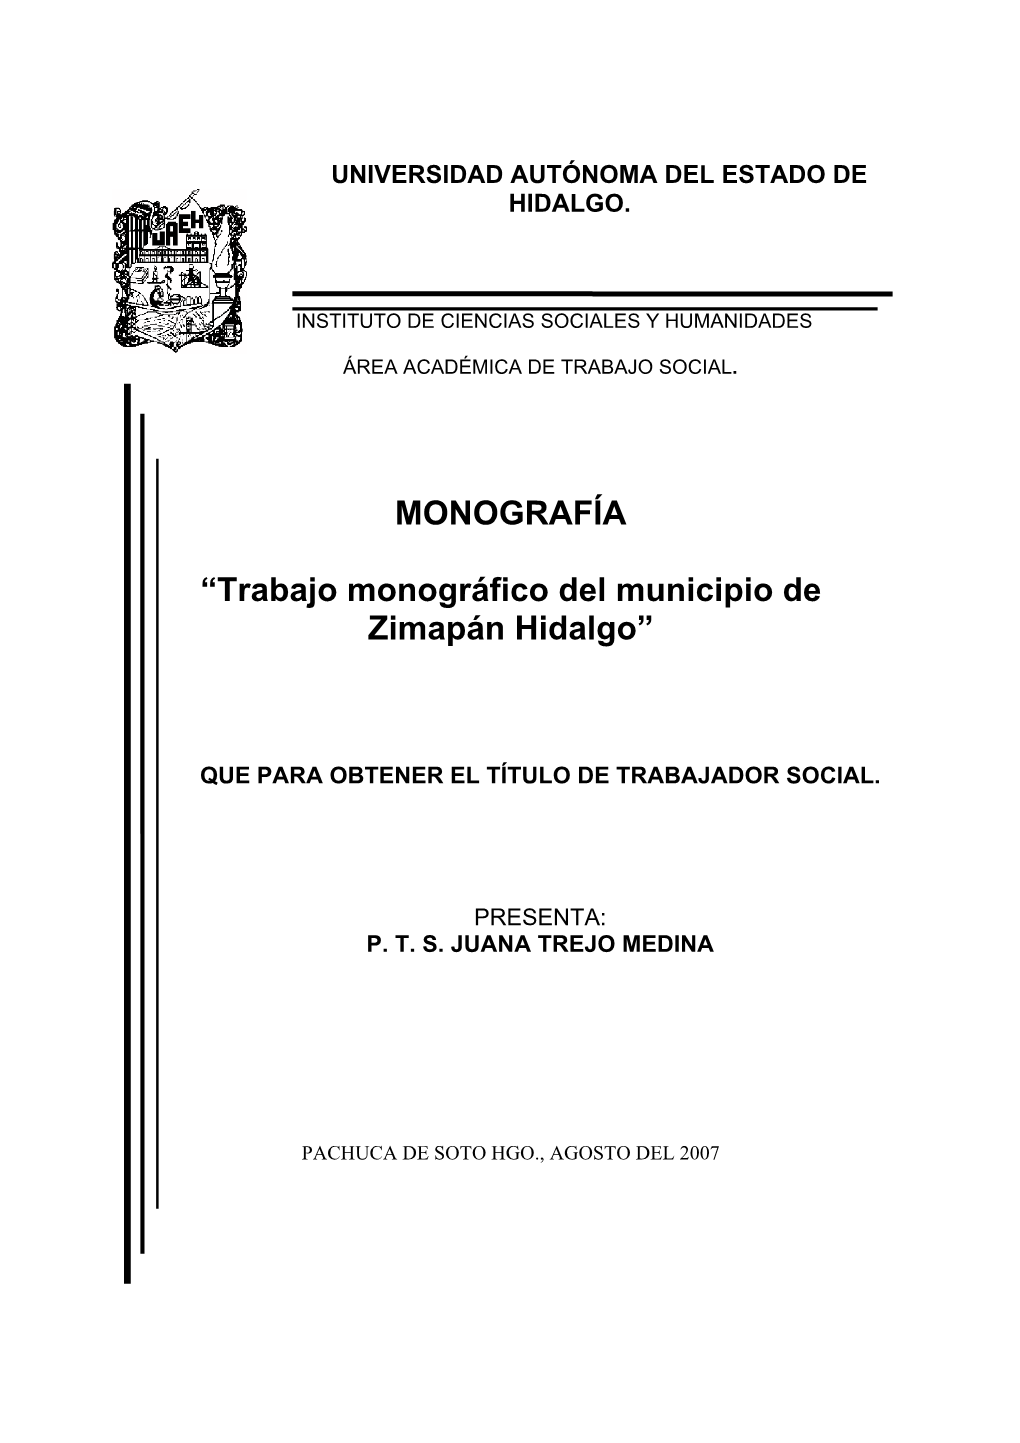 Trabajo Monográfico Del Municipio De Zimapán Hidalgo”